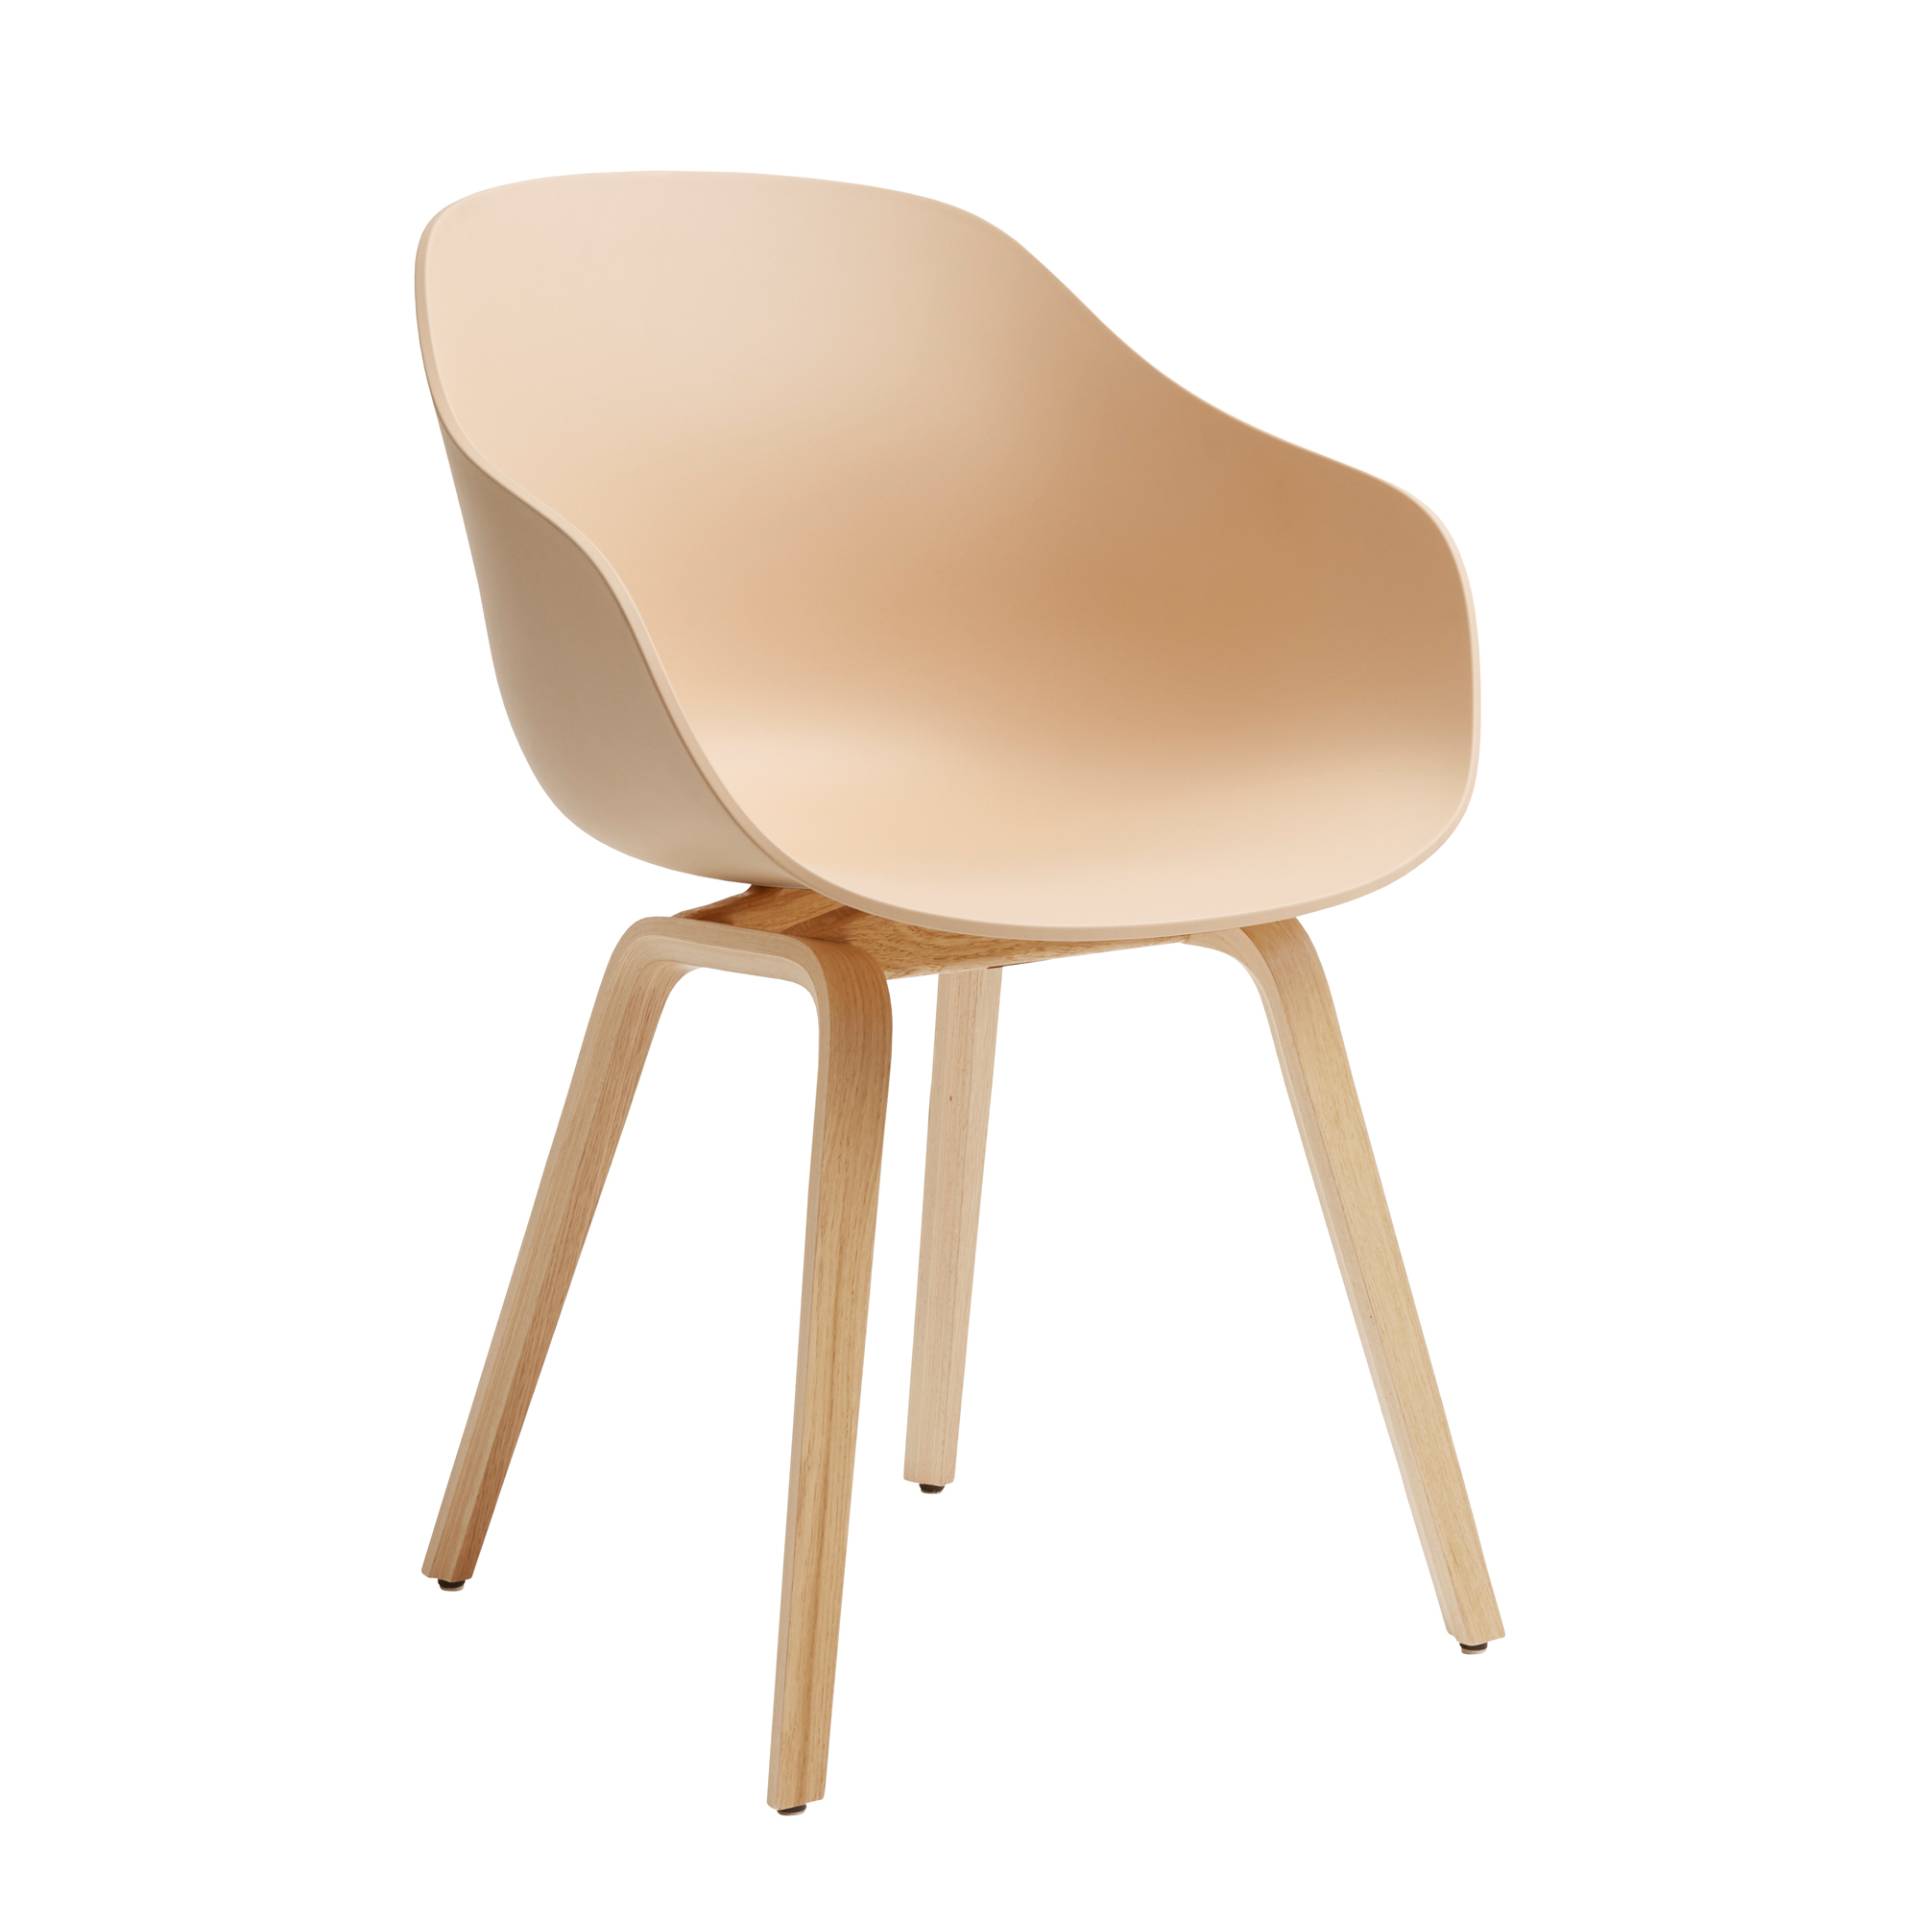 HAY - About a Chair AAC 222 2.0 Armlehnstuhl Eiche lackiert - blasser pfirsich/Sitzschale Polypropylen recycelt/Gestell Eiche lackiert wasserbasiert/m von HAY